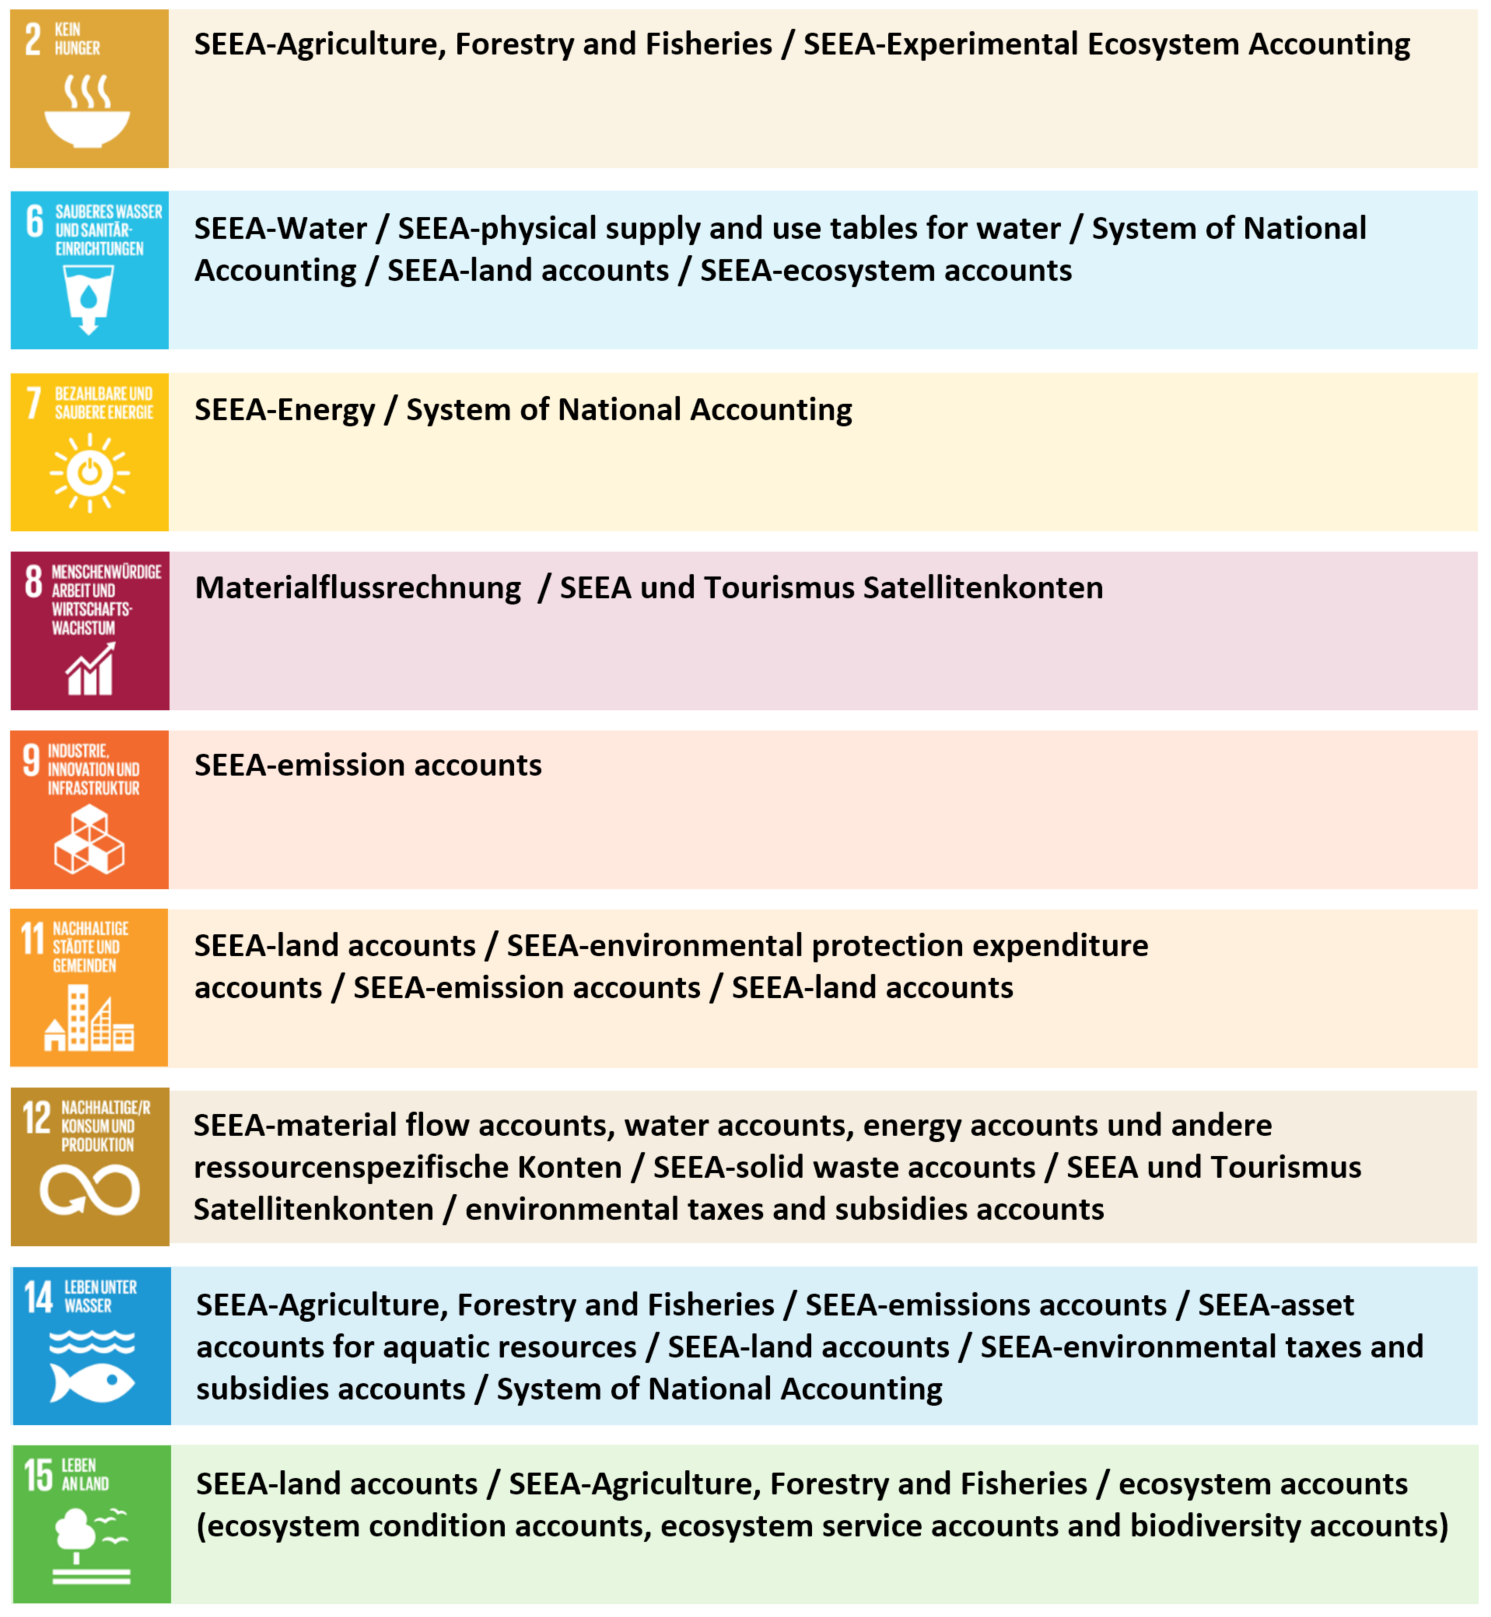 Darstellung ausgewählter SDGs und relevante Datenquellen aus den Umweltgesamtrechnungen